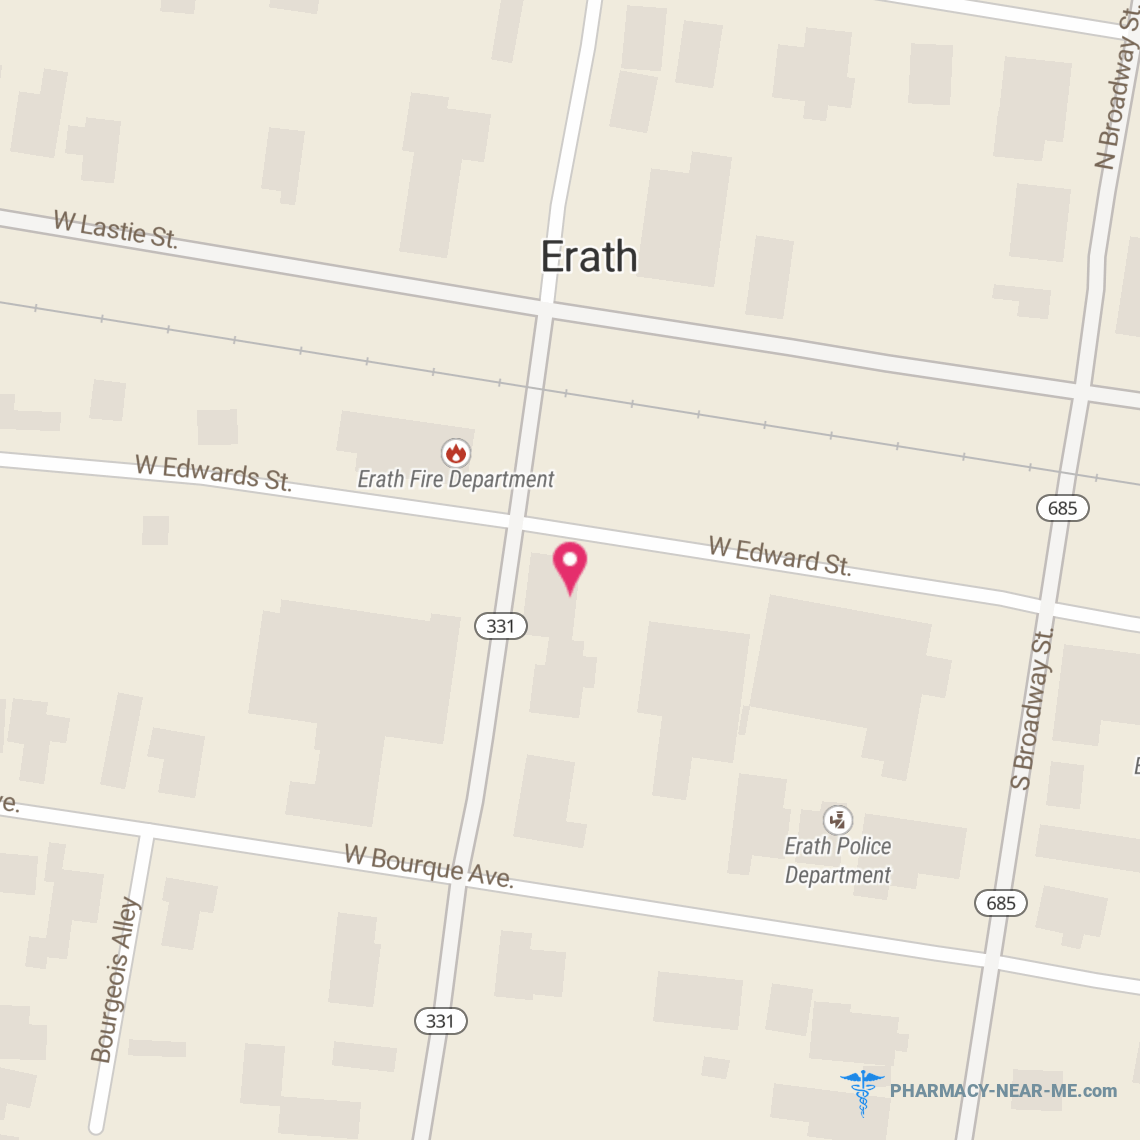 CASHWAY PHARMACY OF ERATH - Pharmacy Hours, Phone, Reviews & Information: 112 West Edward Street, Erath, Louisiana 70533, United States